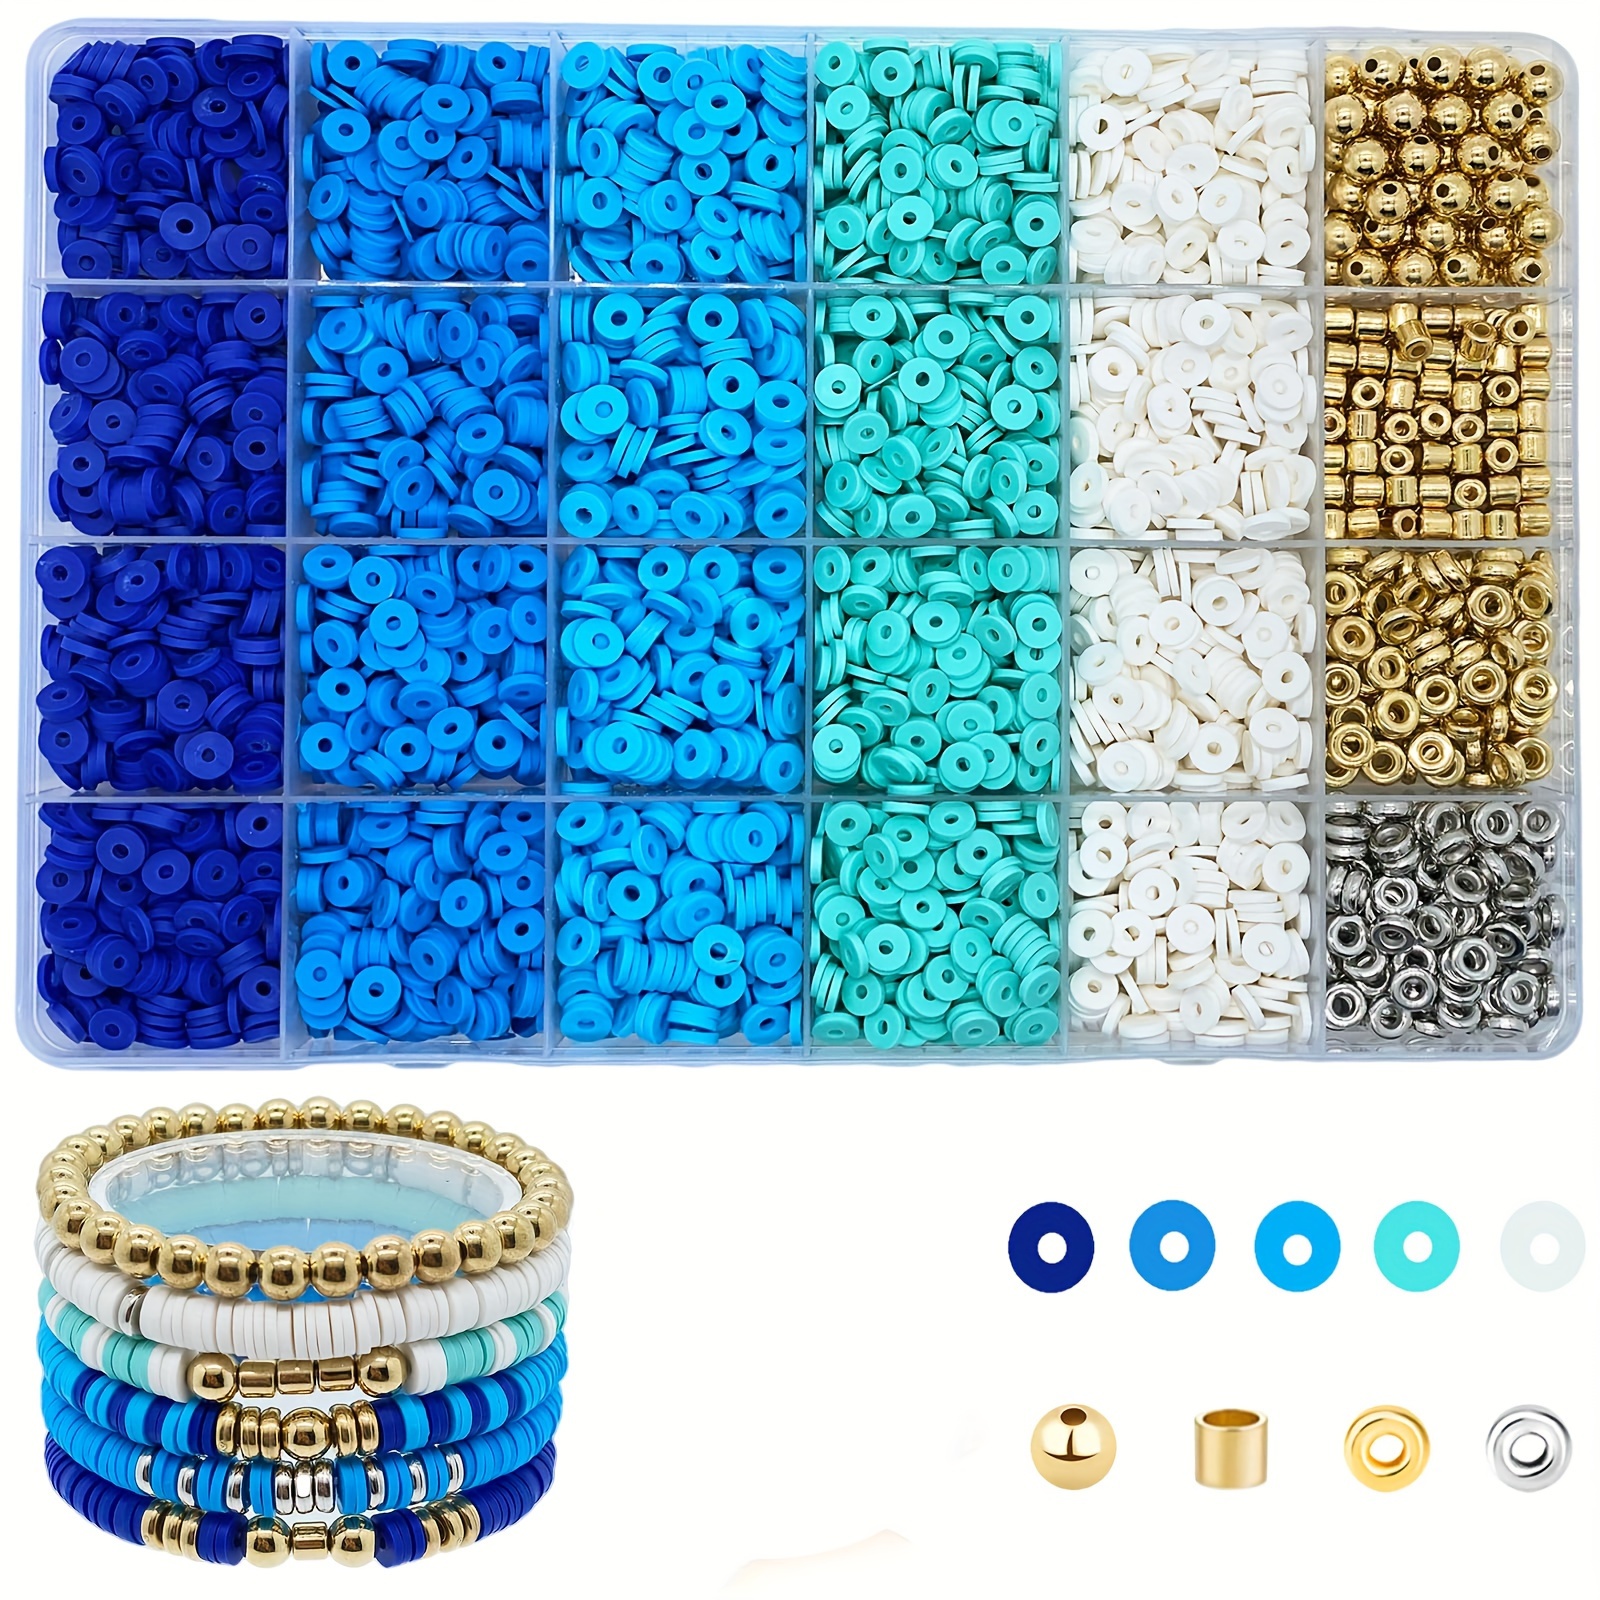 

Kit de fabrication de bijoux comprenant 4320 perles en argile bleue pour la confection de bracelets, des perles plates rondes de polymère argenté de 6 mm et du cordon élastique en cristal.